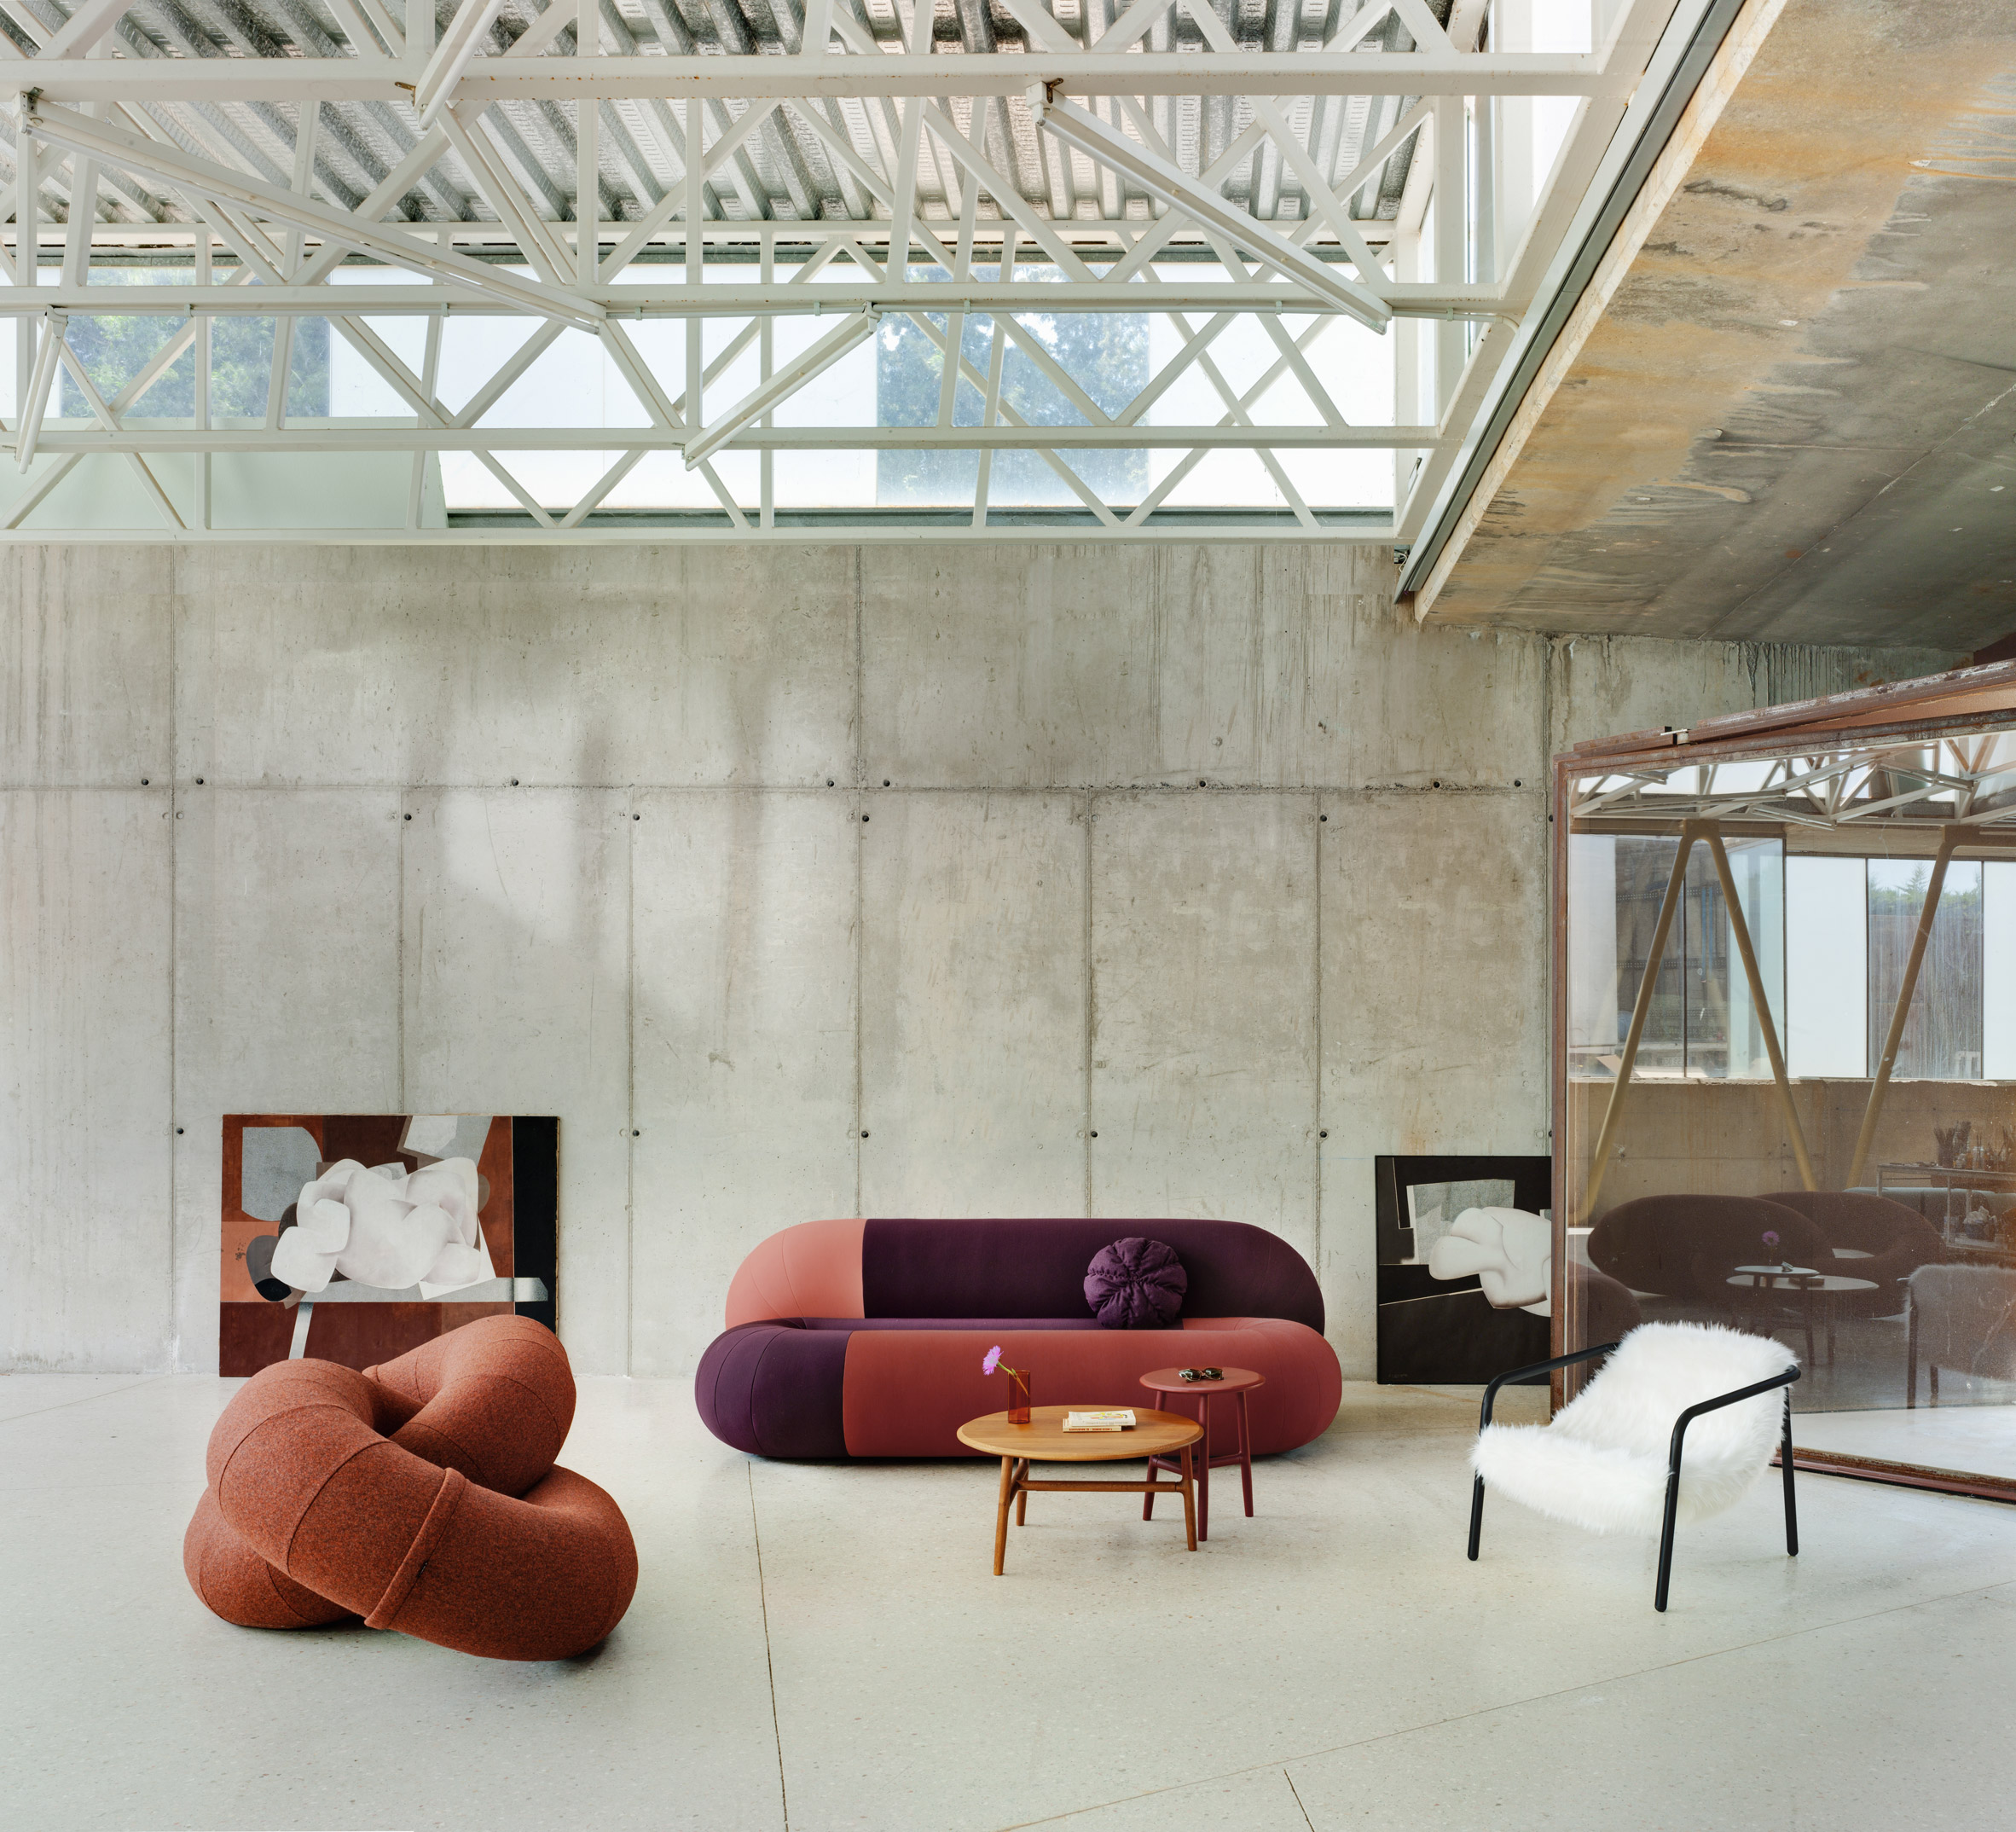 Viva conjunctie tellen Link & Loop furniture provides "joyful ways of sitting"